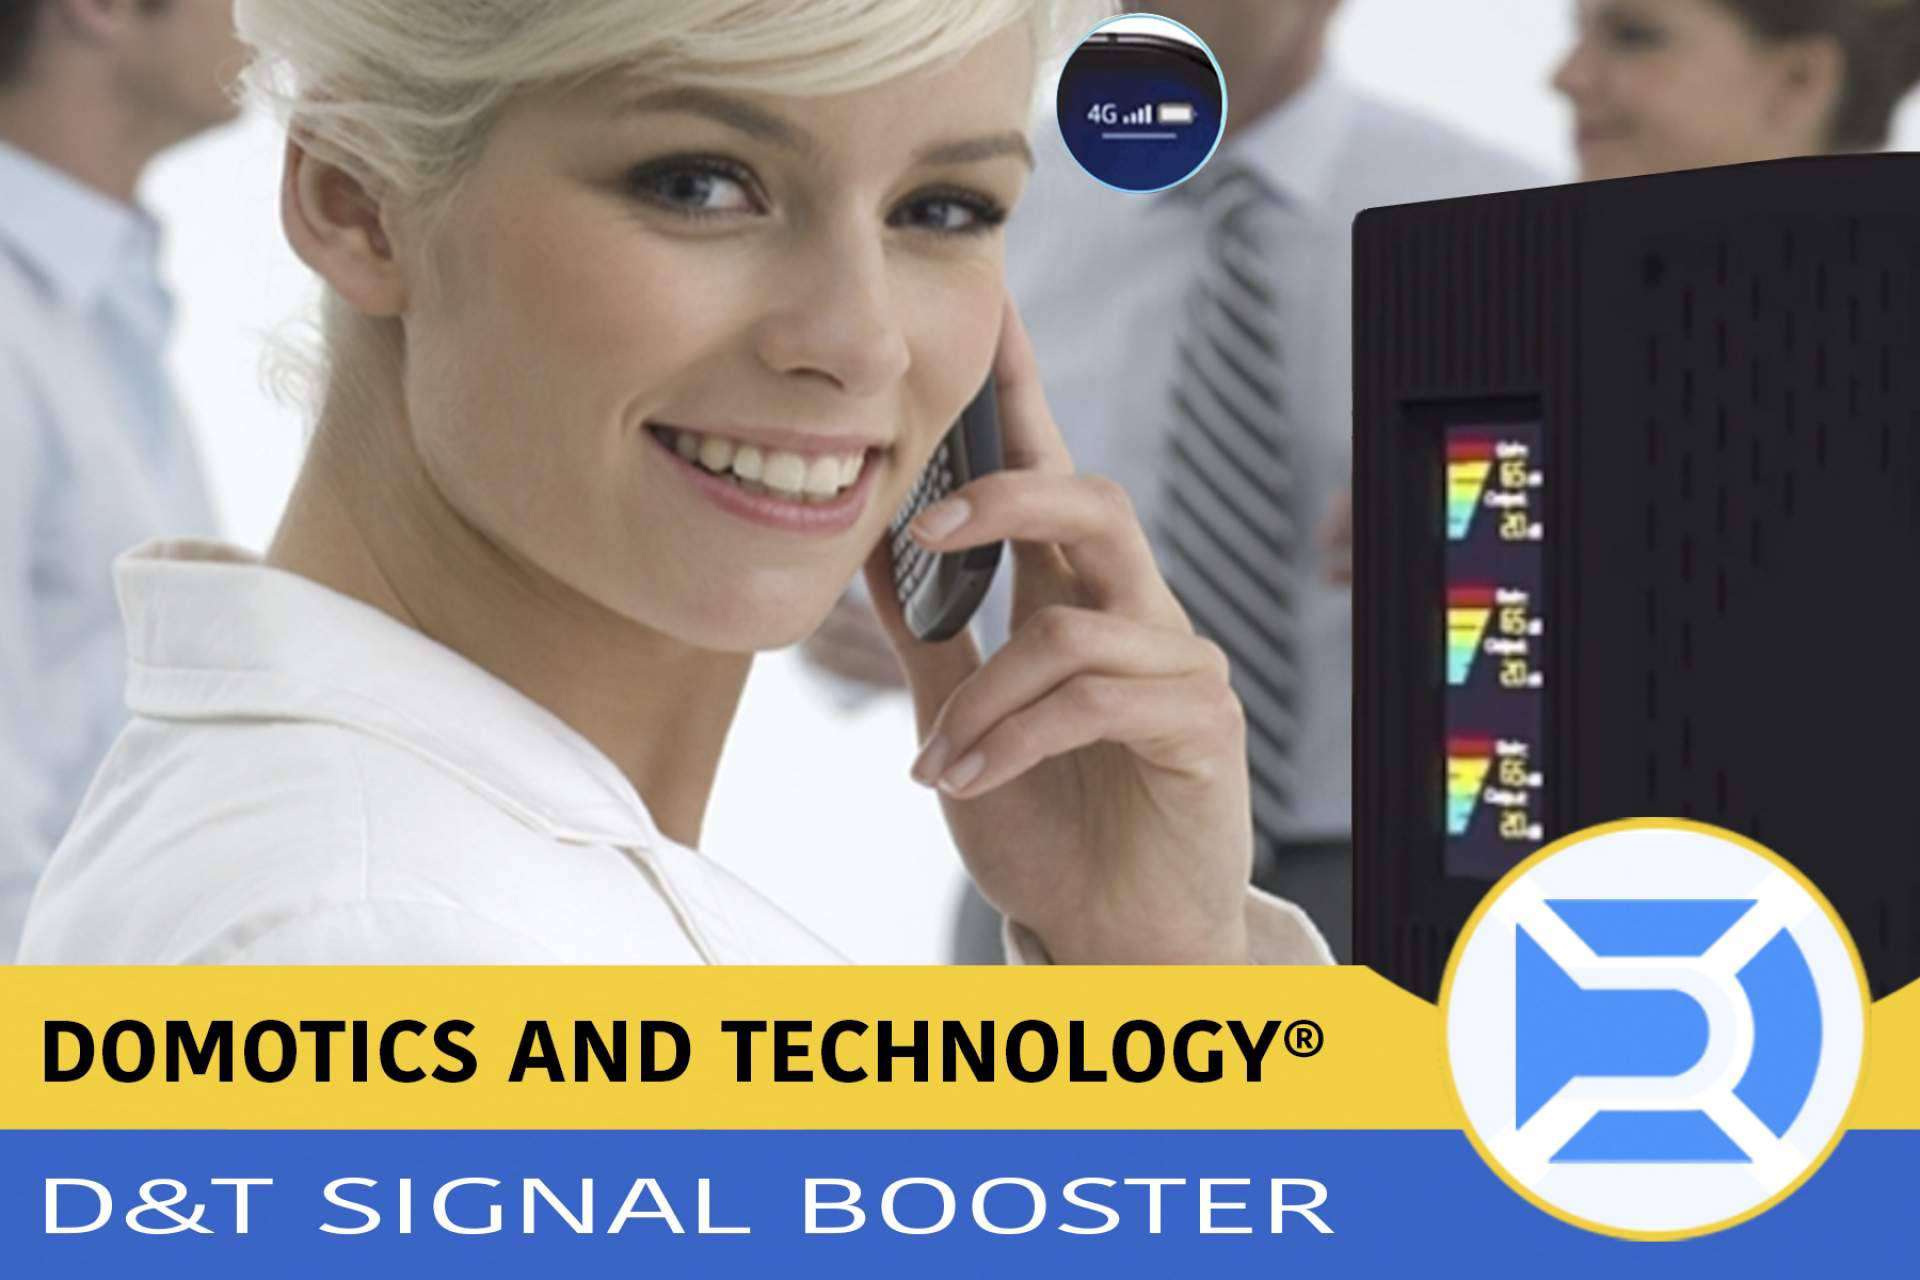 El D&T Signal Booster de Domotics and Technology permite optimizar la señal a las empresas